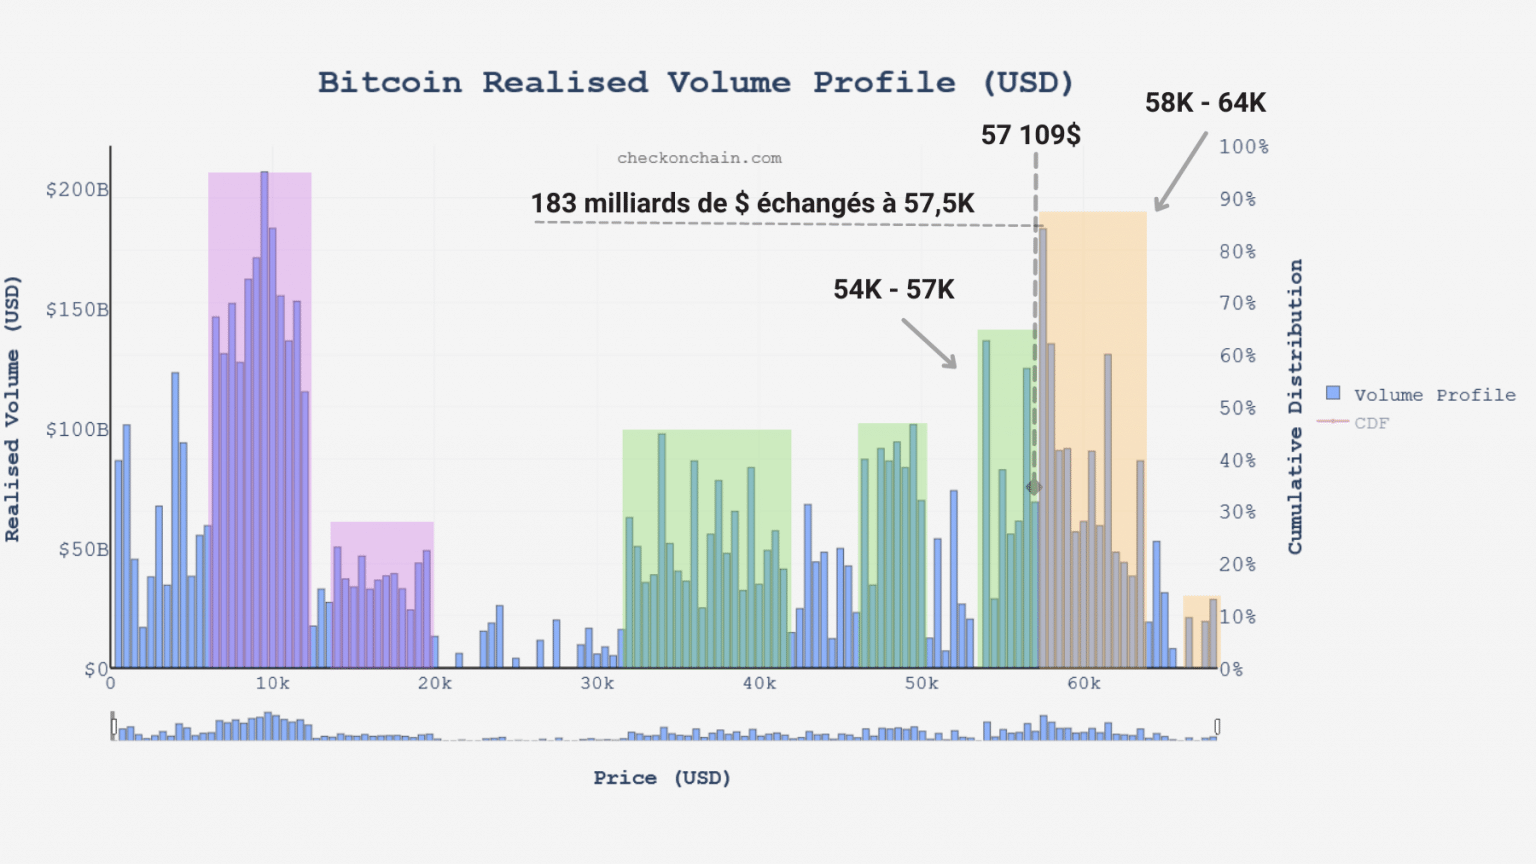 Gráfico del volumen realizado de bitcoins (BTC) (Fuente: checkonchain.com)